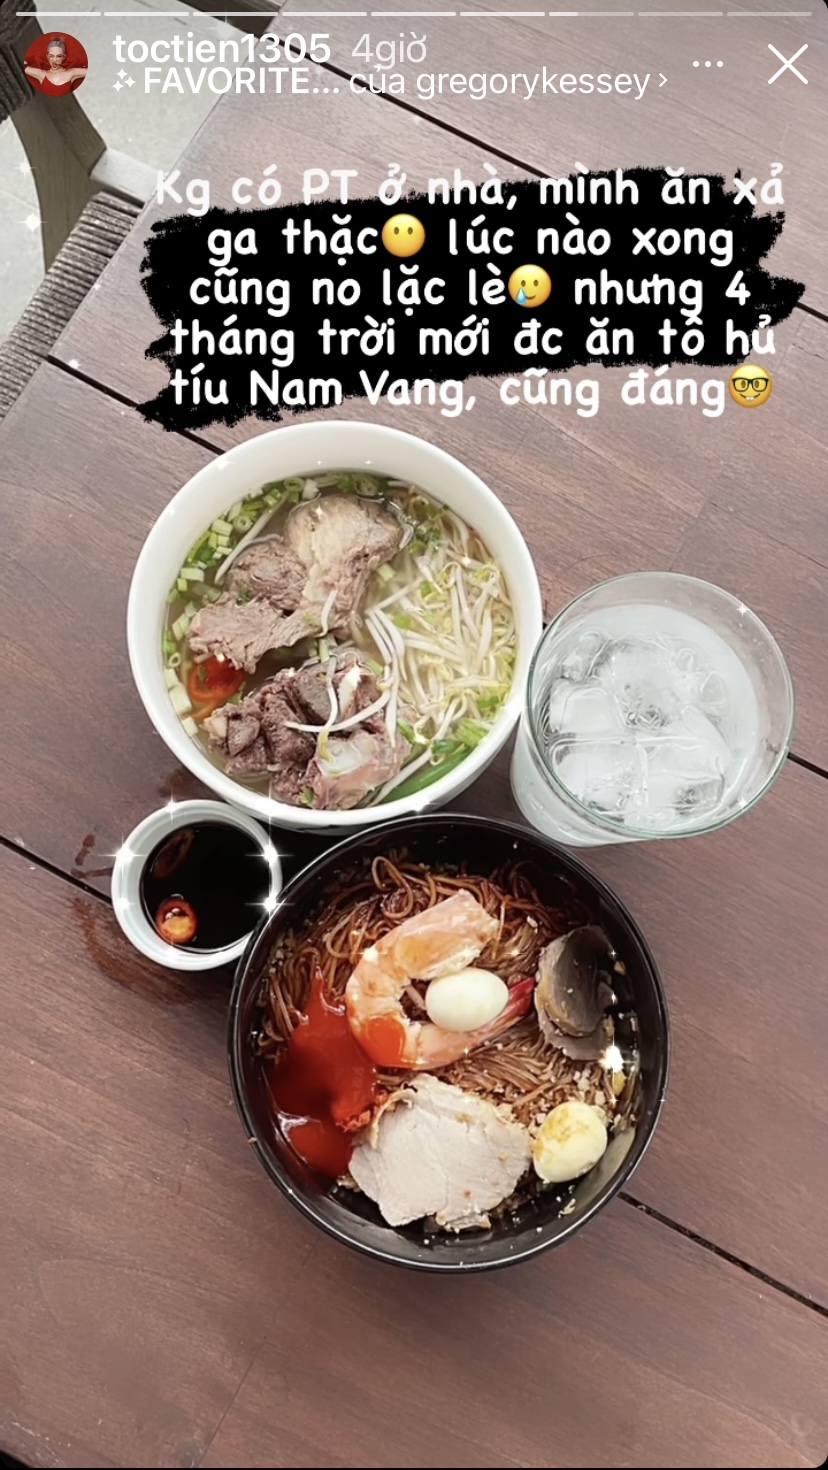 Vì PT Hoàng Touliver vắng nhà nên Tóc Tiên tự tặng cho mình một bữa ăn thả ga. Sau 4 tháng, cuối cùng cô cũng được ăn một bát hủ tiếu Nam Vang chuẩn vị.